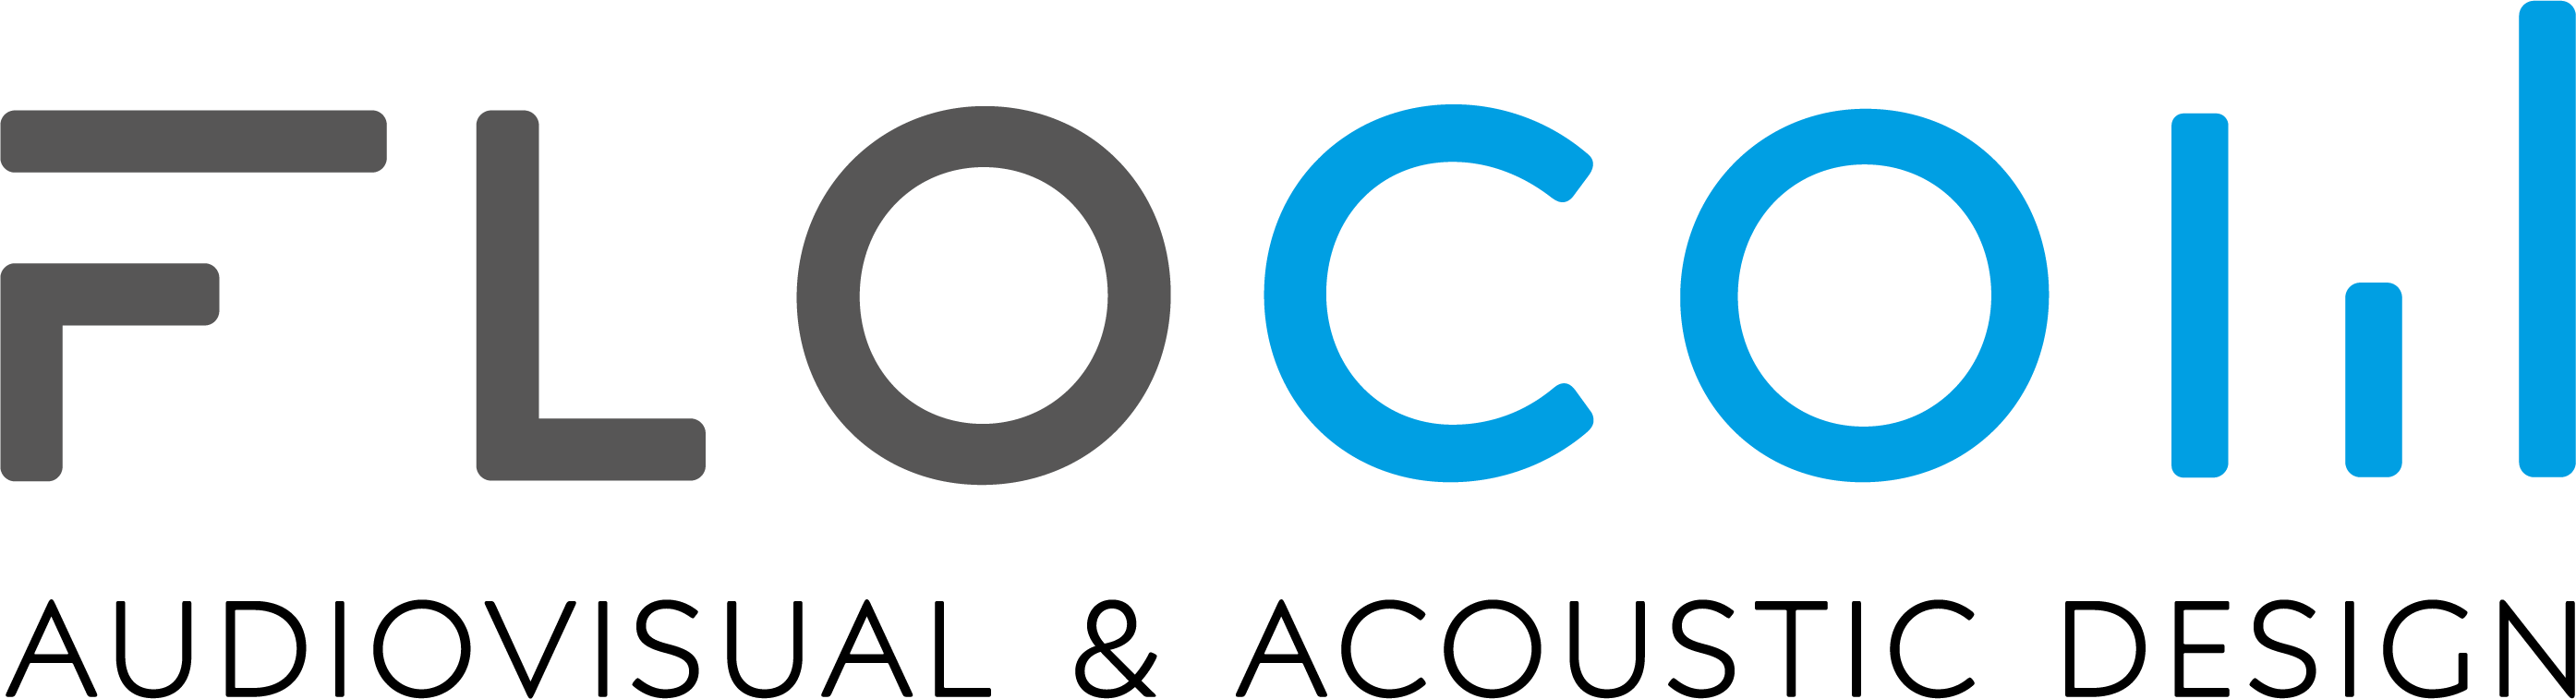 flocom logo